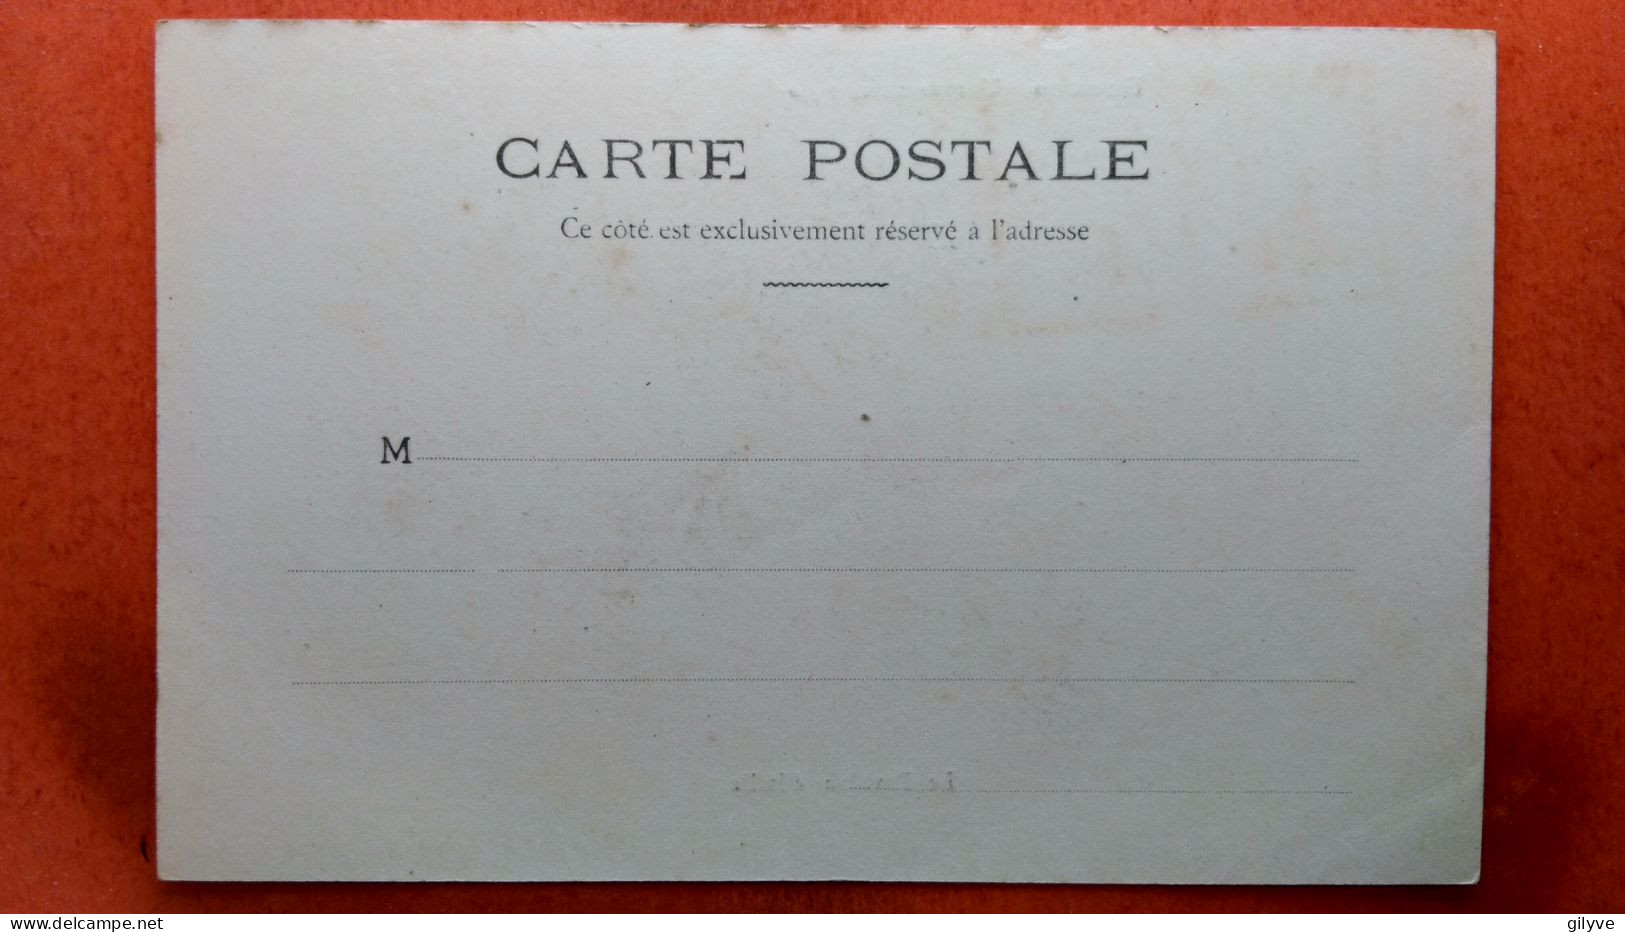 CPA (75) Exposition Universelle De Paris.1900. Le Pavillon D'Italie.  (7A.578) - Expositions